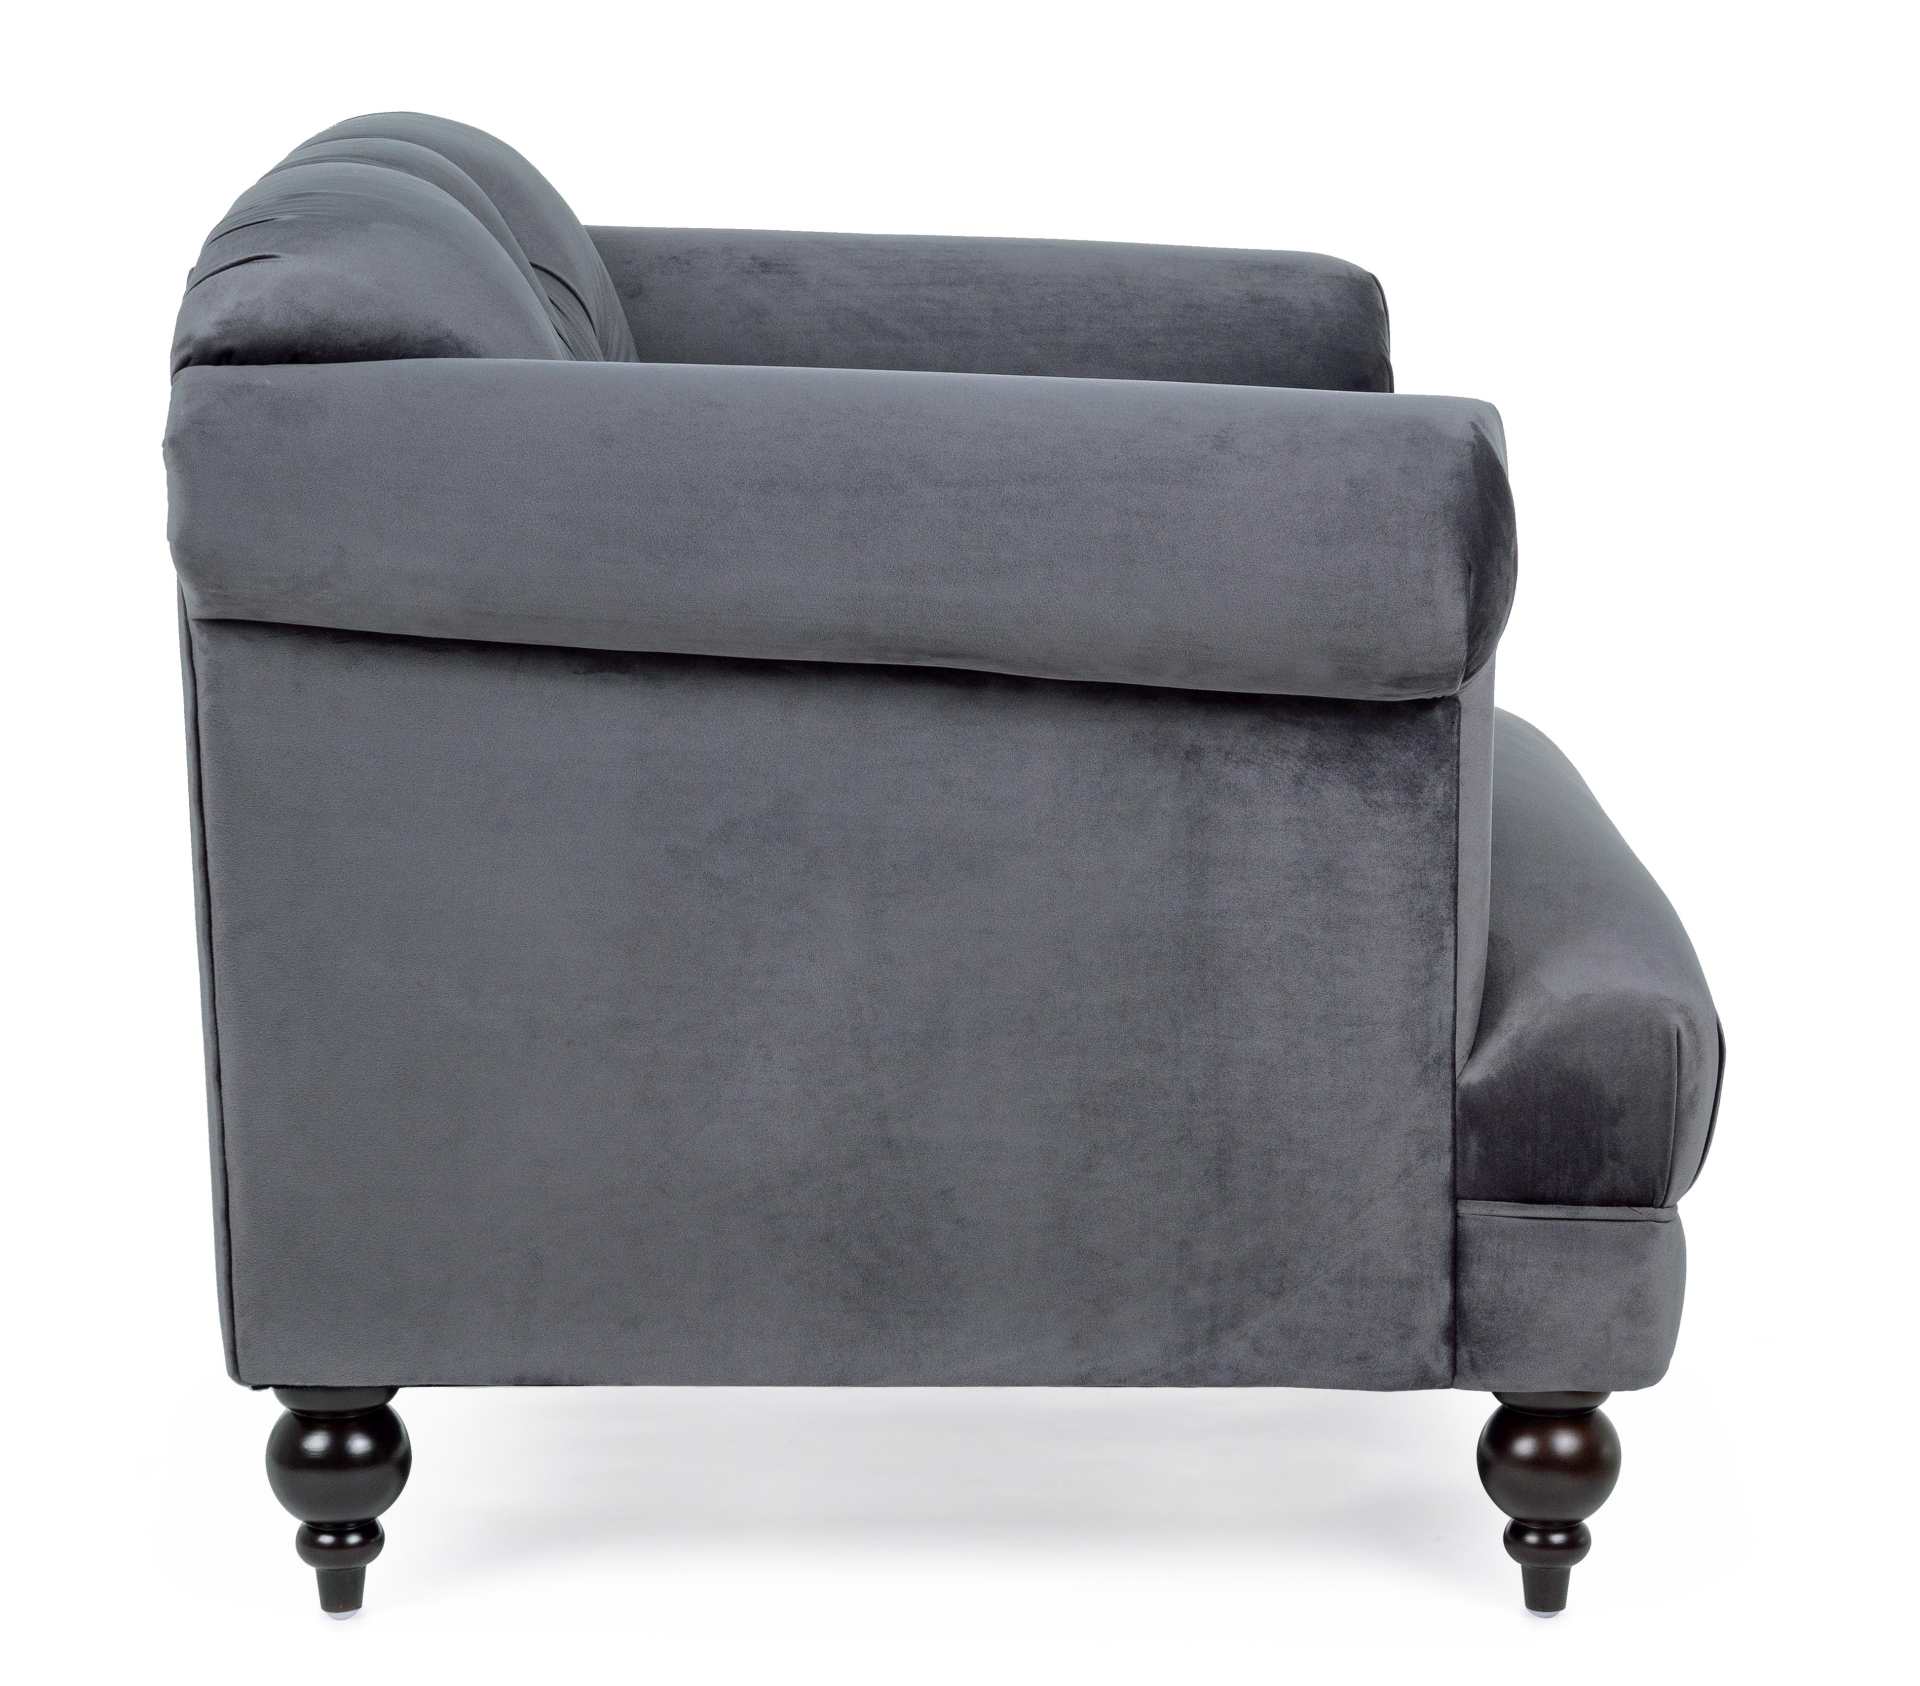 Der Sessel Blossom überzeugt mit seinem klassischen Design. Gefertigt wurde er aus Stoff in Samt-Optik, welcher einen grauen Farbton besitzt. Das Gestell ist aus Kautschukholz und hat eine schwarze Farbe. Der Sessel besitzt eine Sitzhöhe von 44 cm. Die Br